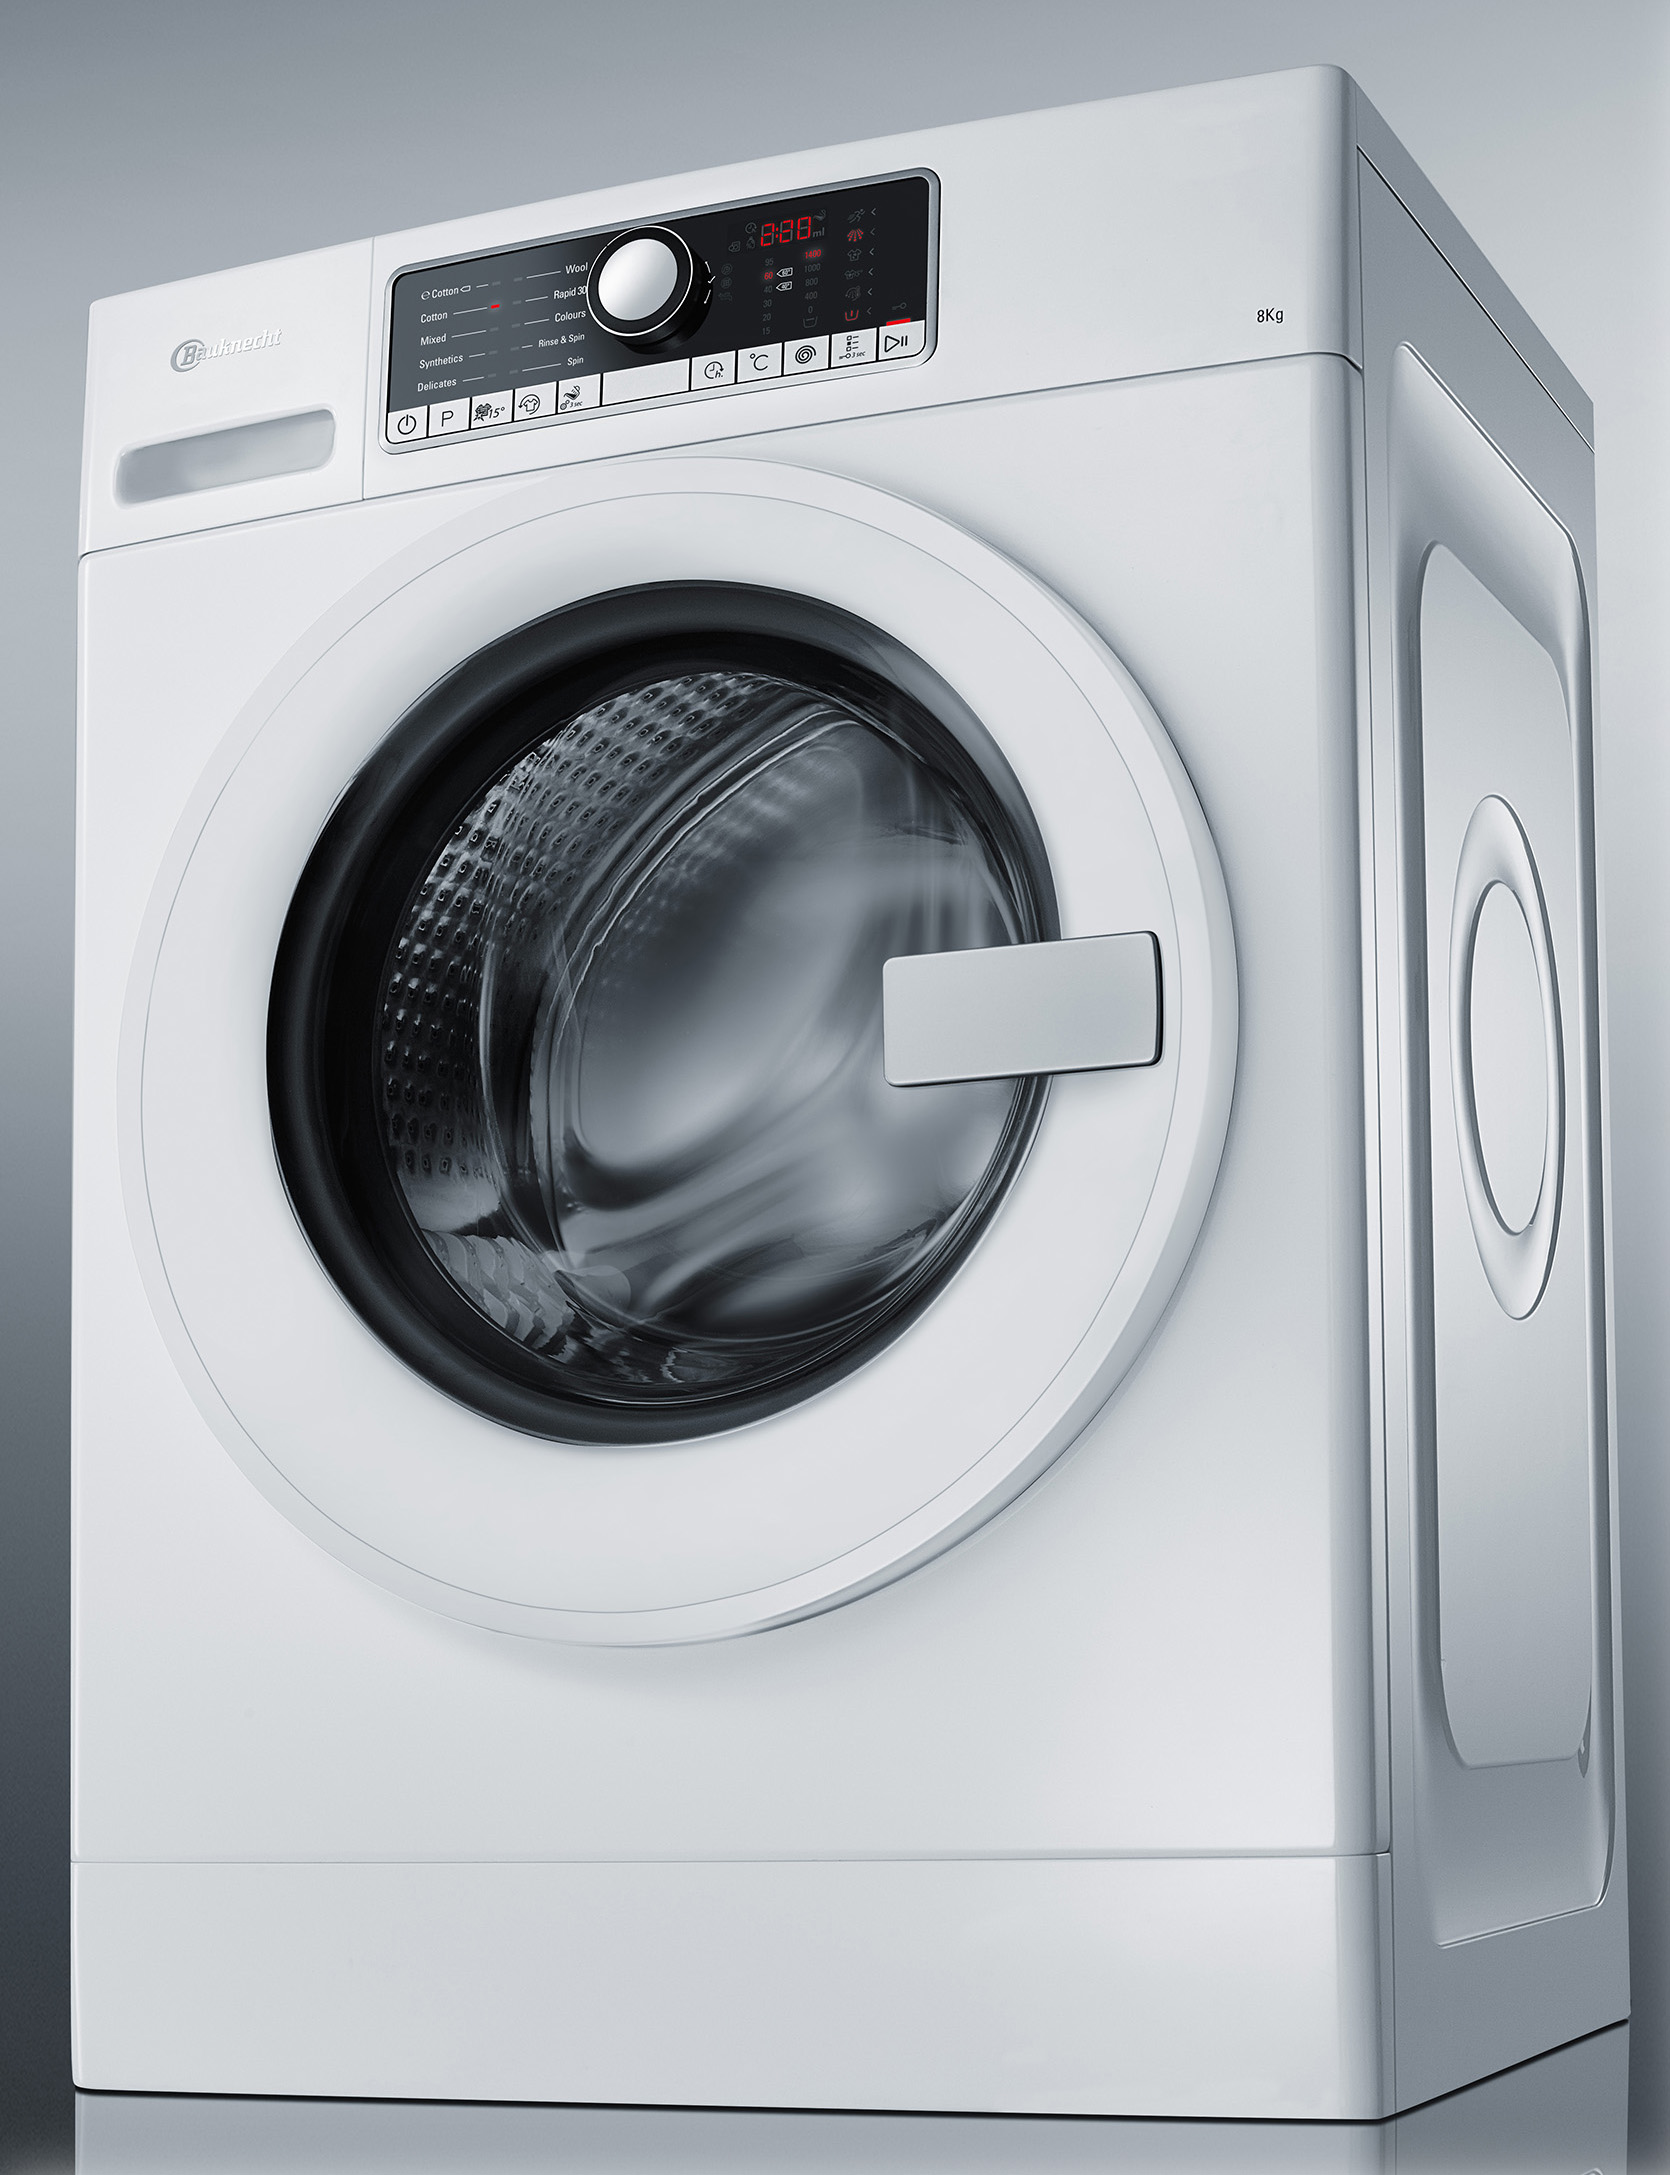 Vorort zusammengesetzt Fertigkeit bauknecht waschmaschine zen 10 kg Annahme Bl 228 st sich auf Im Detail